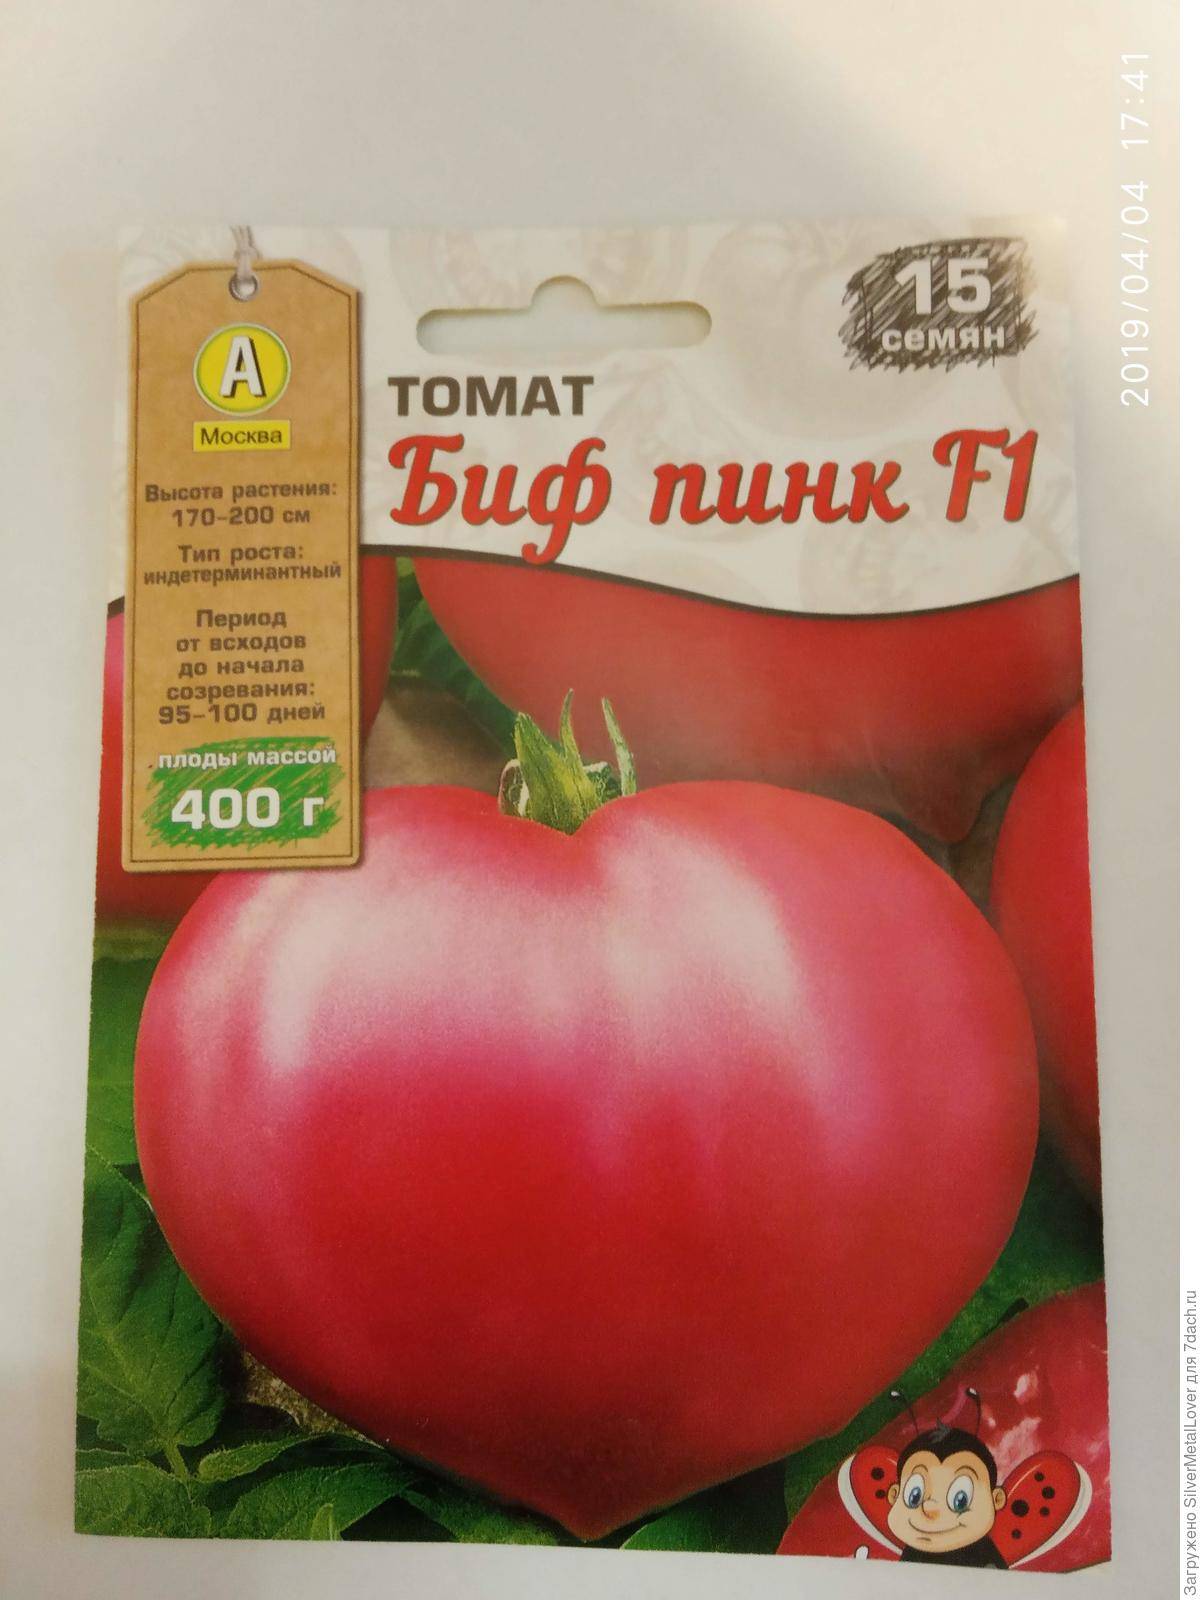 Мясистый гигант с восхитительным вкусом — за что садоводы любят помидоры сорта «биг биф»